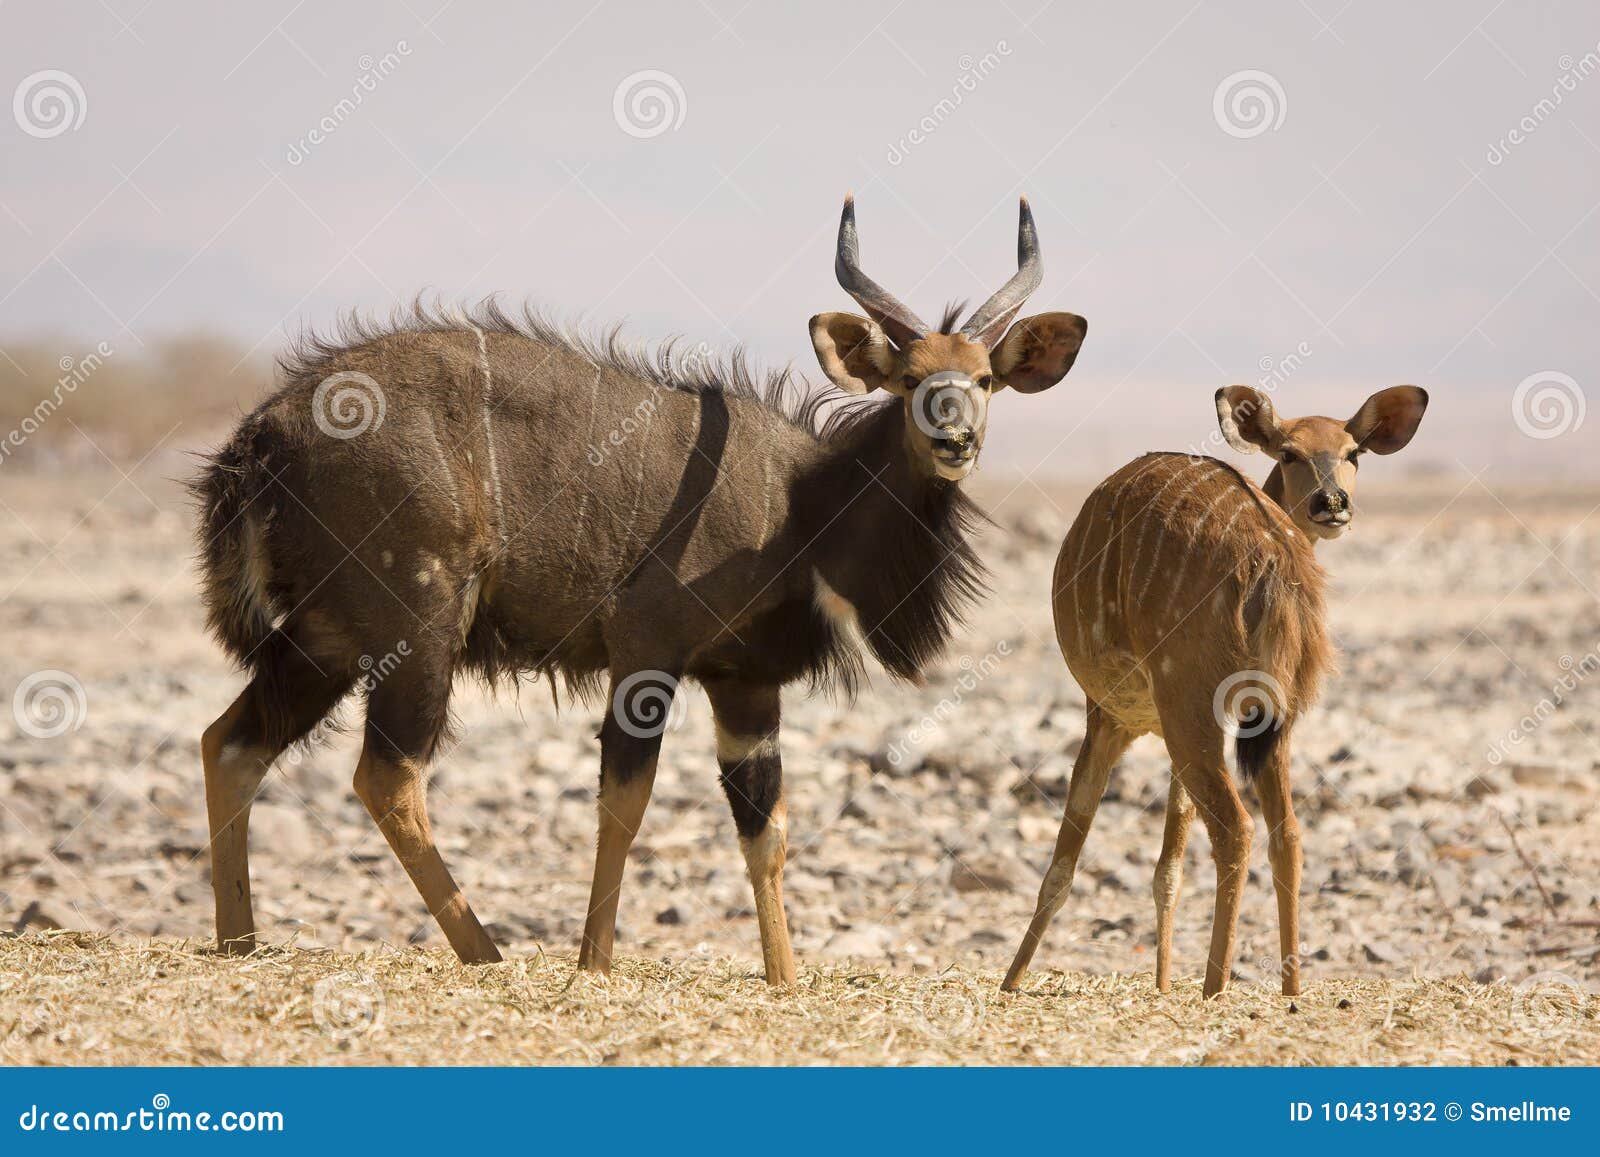 nyala antelopes